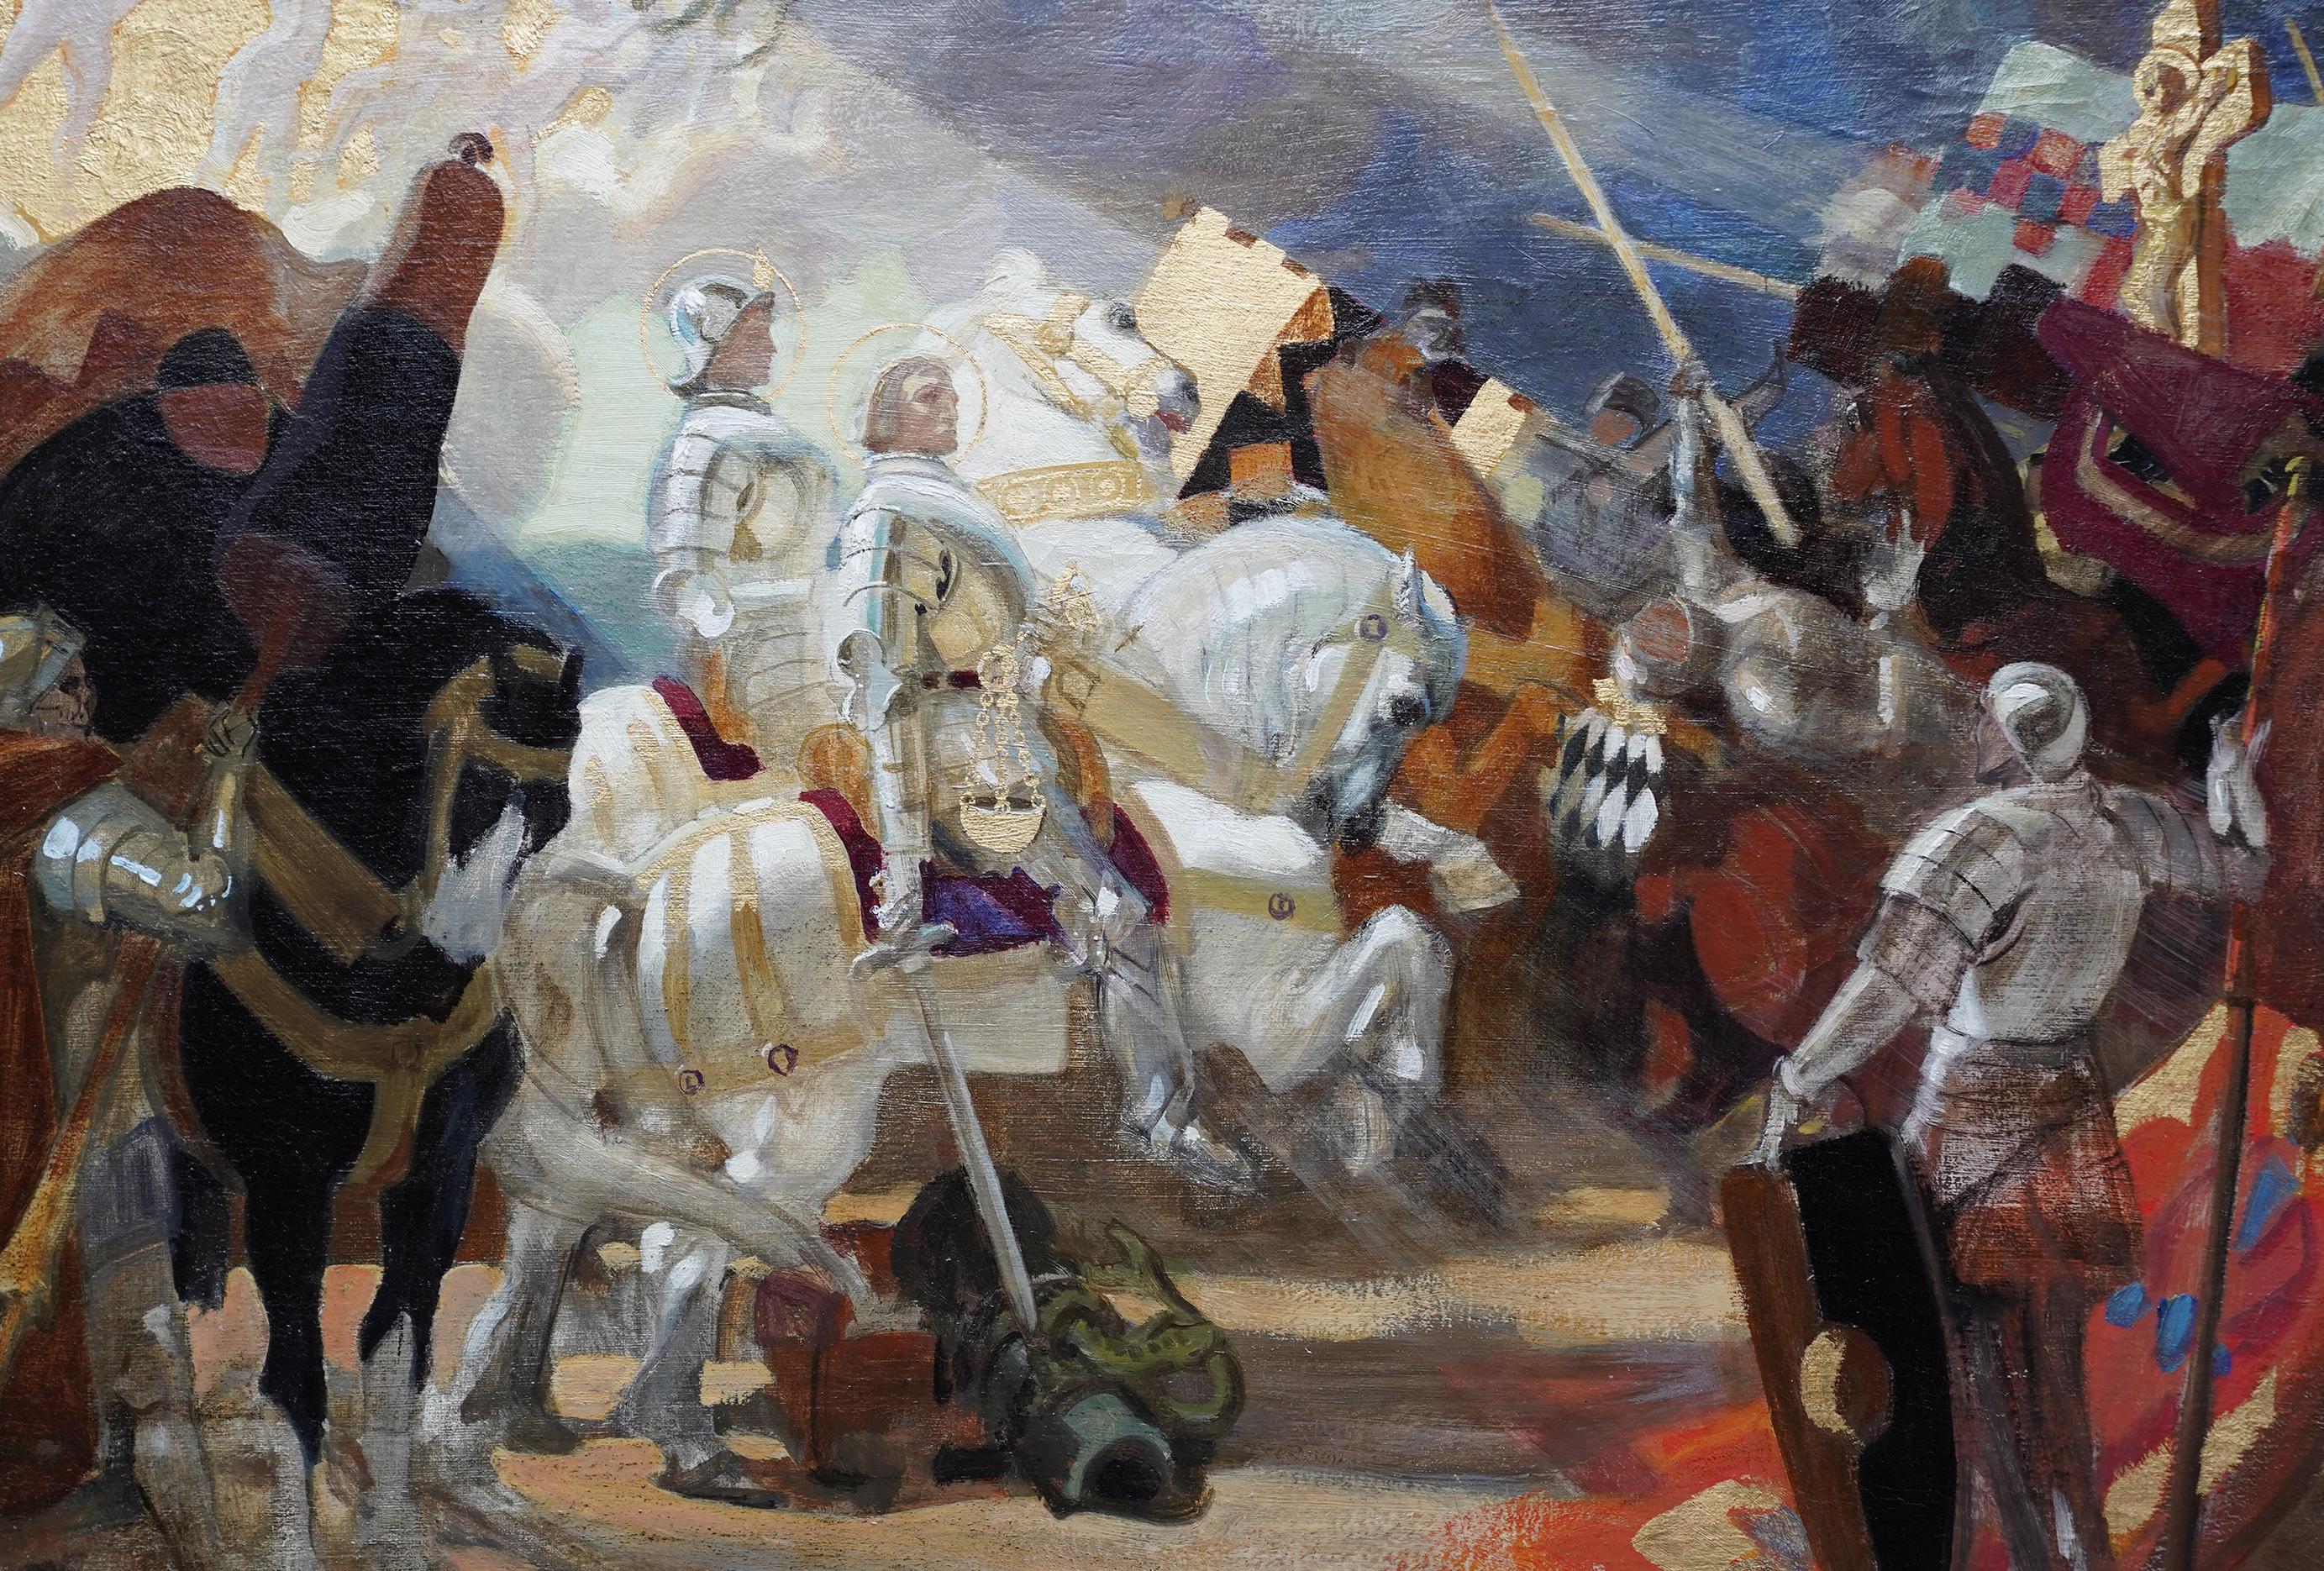 Onward Christian Soldiers - peinture à l'huile d'art religieuse édouardienne britannique de 1911  - Réalisme Painting par Frank Owen Salisbury